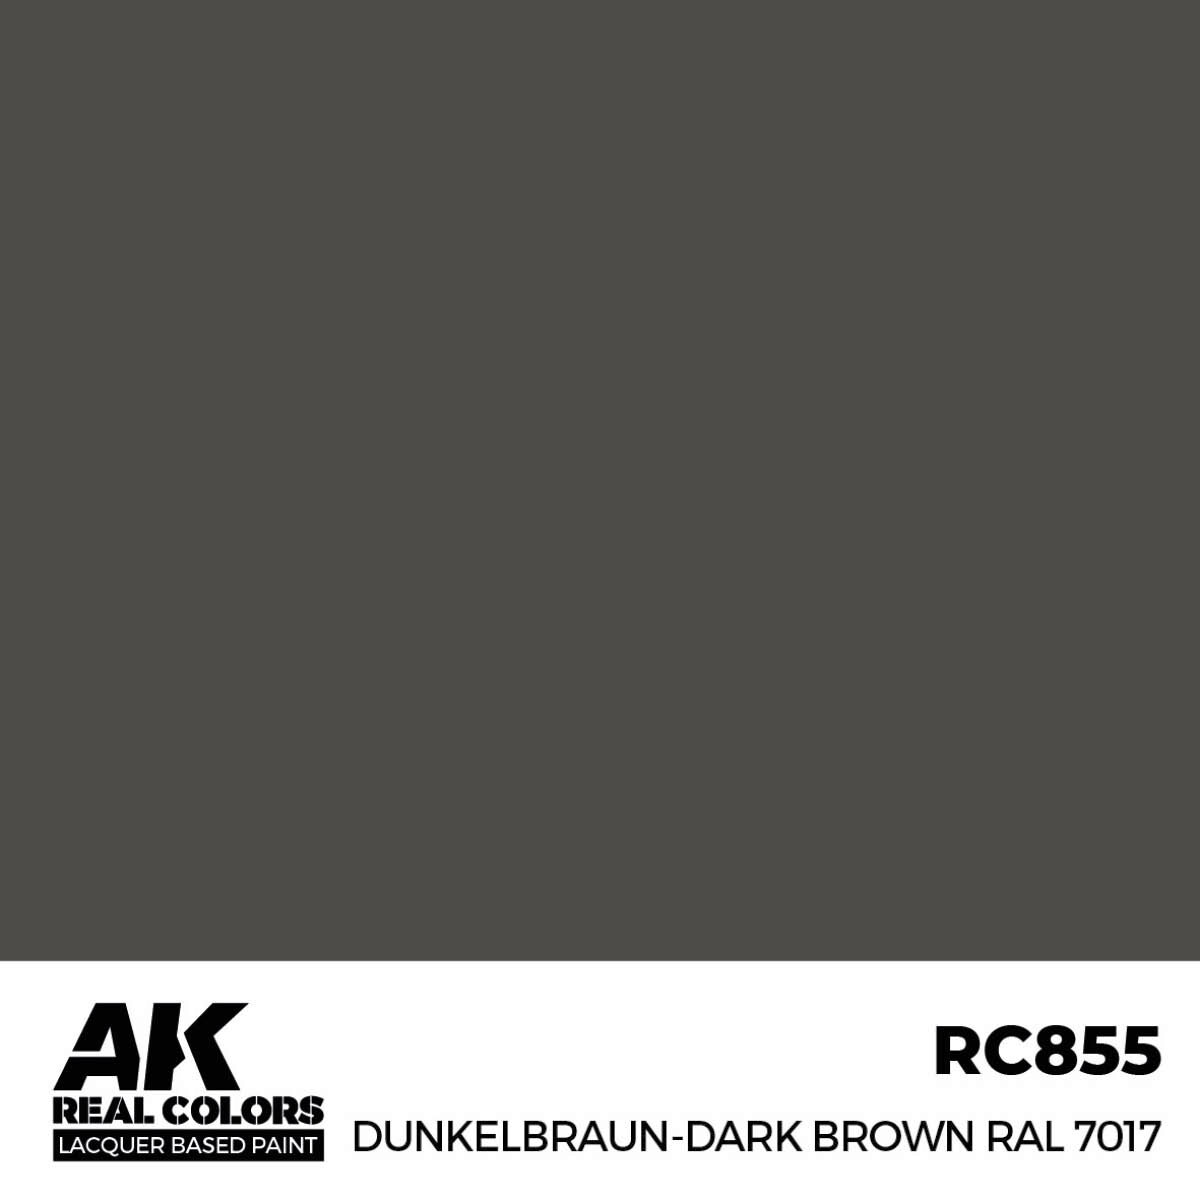 AK RC855 Real Colors Dunkelbraun-Dark Brown RAL 7017 17 ml.